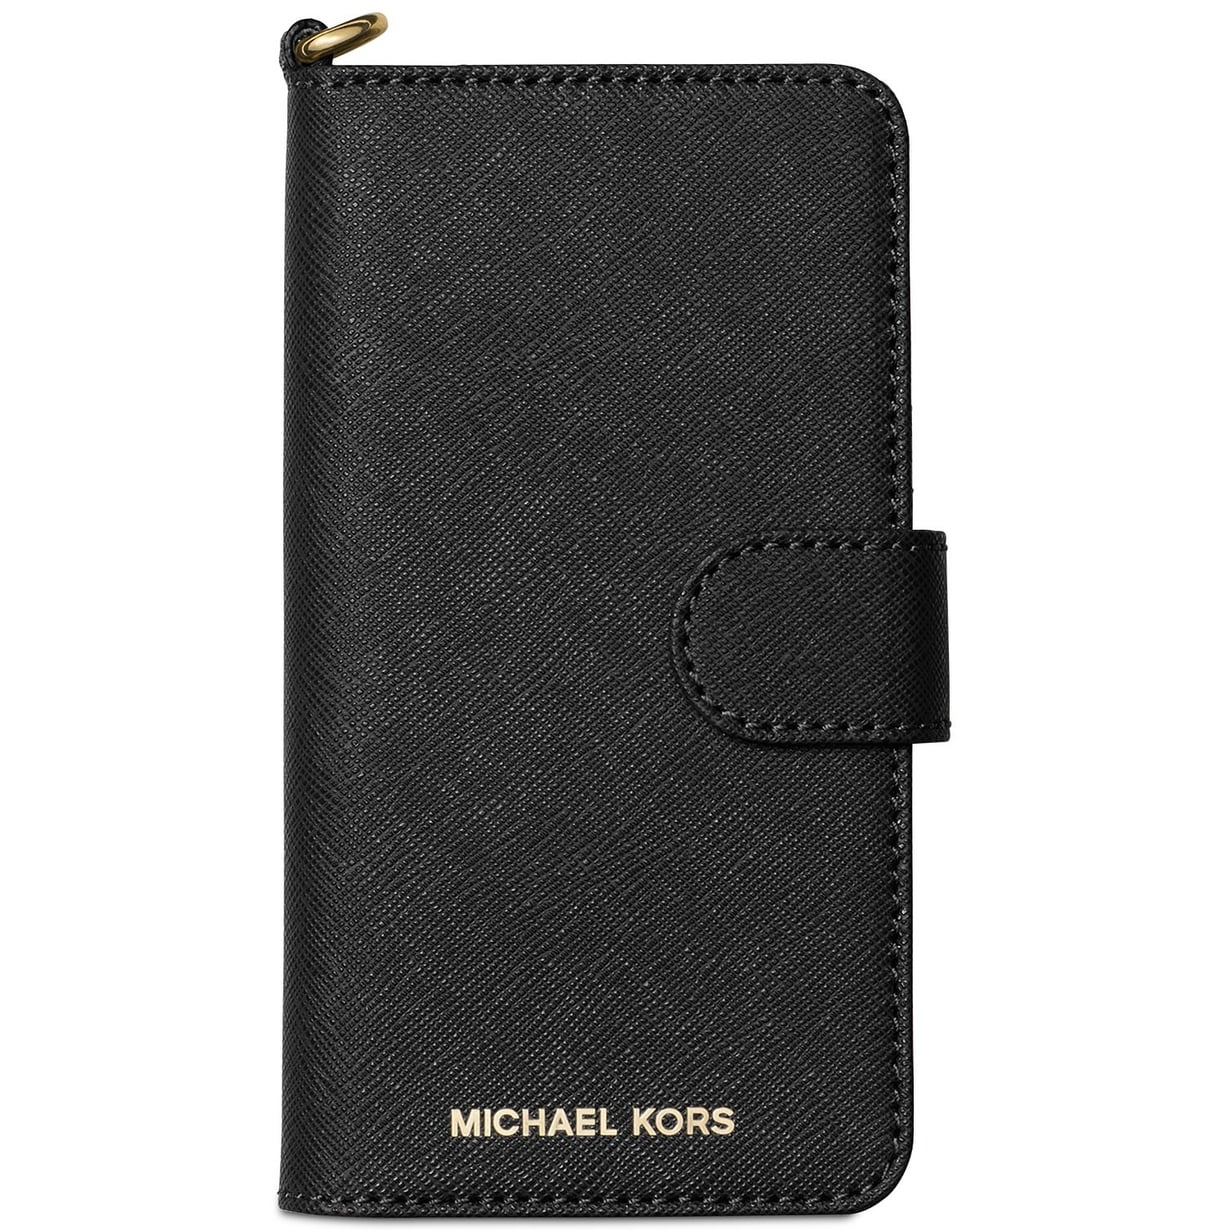 iphone 8 plus wallet case michael kors